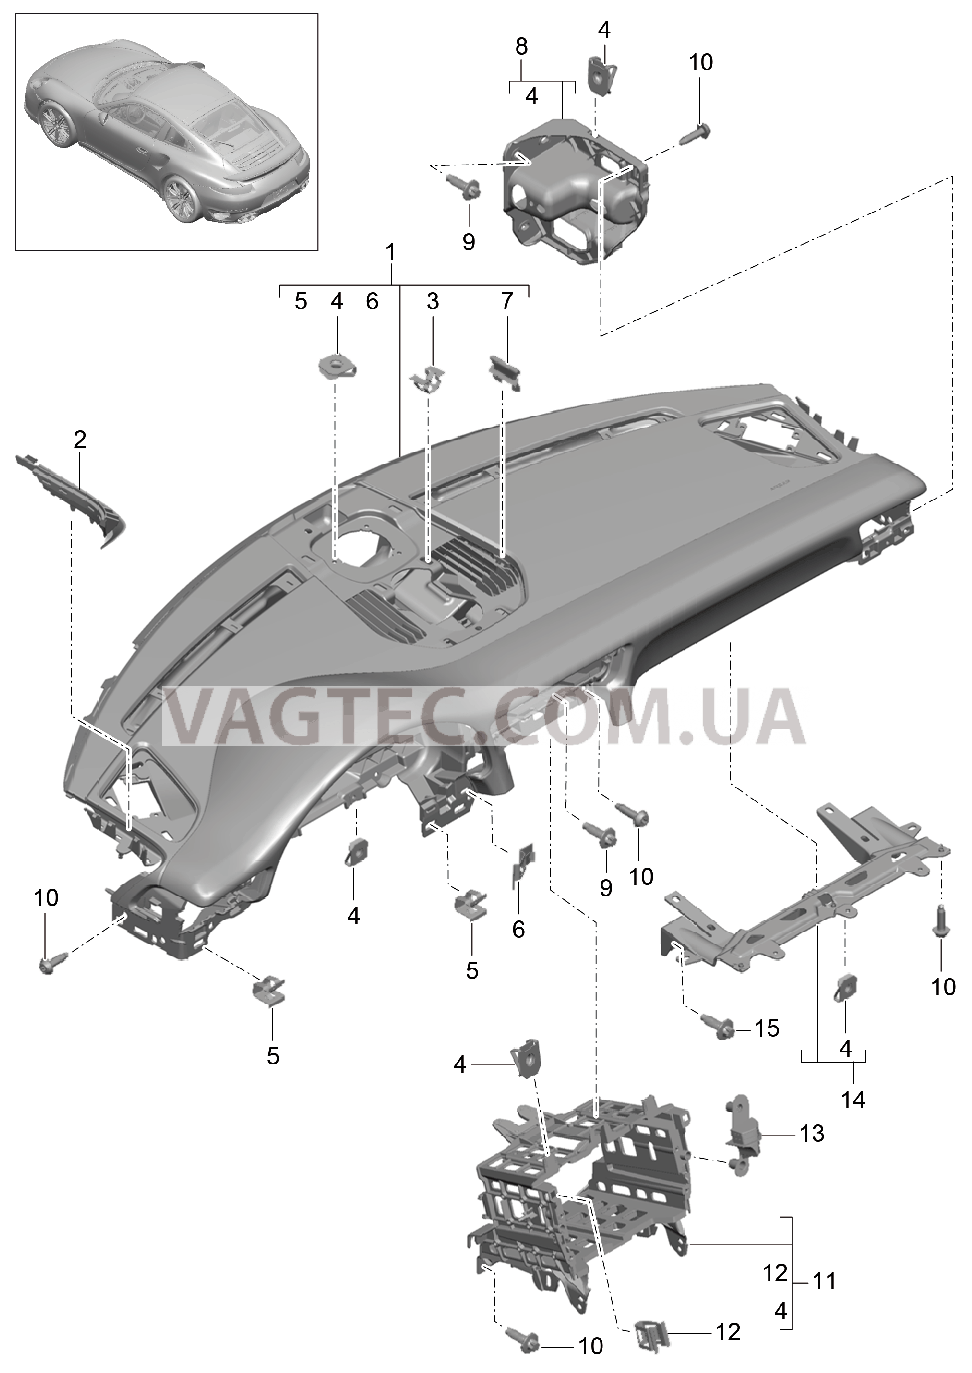 809-002 Облицовка передней панели, Верхняя часть, с, Крепежные элементы для PORSCHE Porsche991Turbo 2014-2017USA